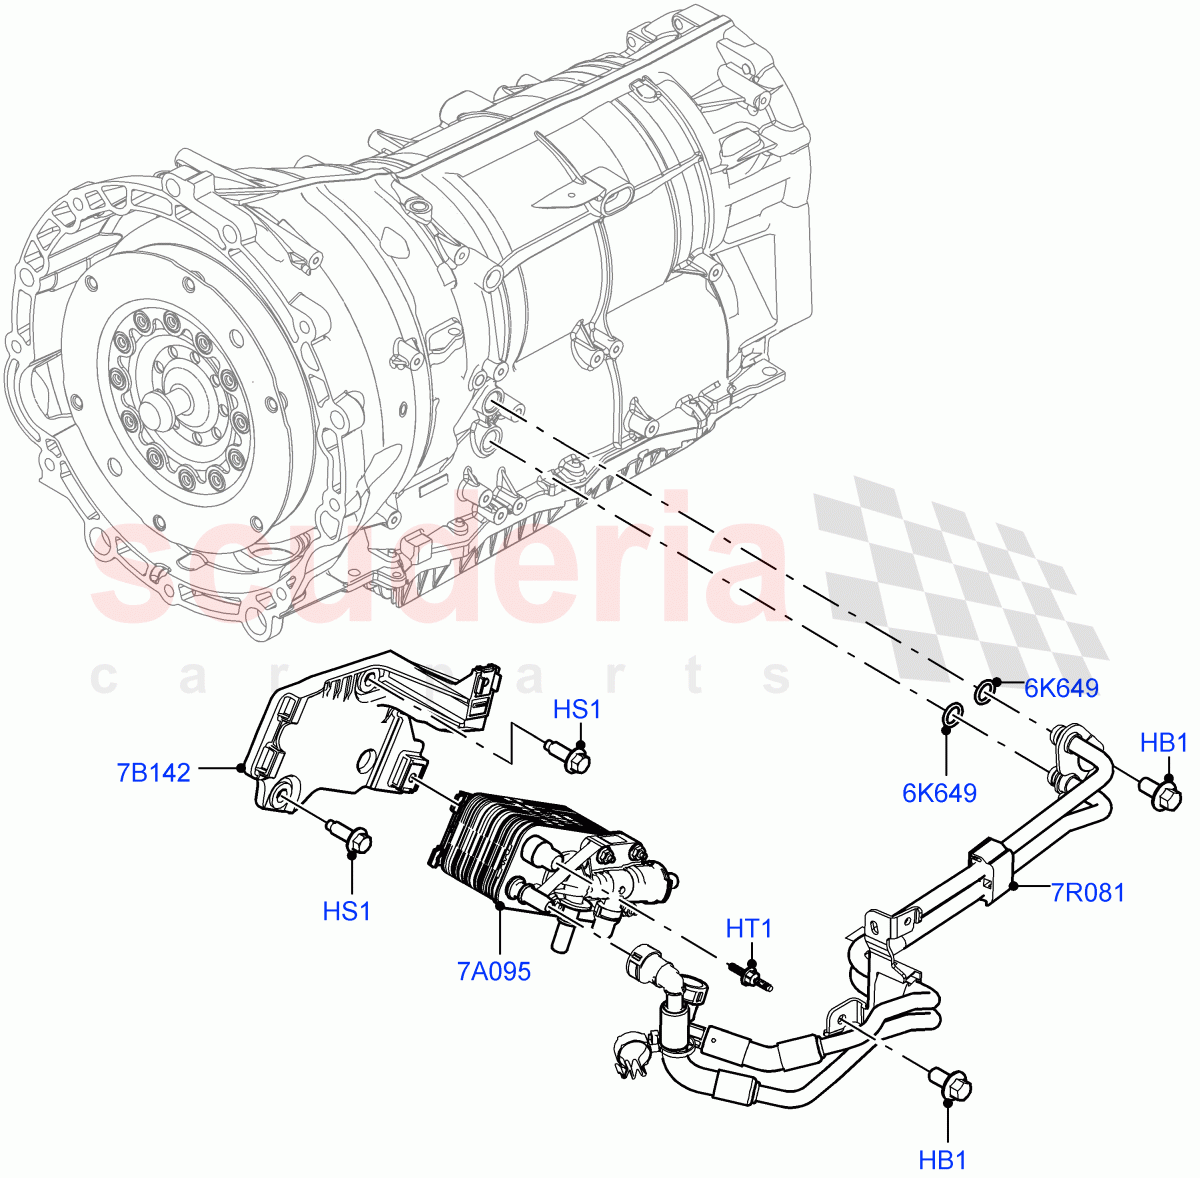 Transmission Cooling Systems(3.0L AJ20D6 Diesel High,8 Speed Auto Trans ZF 8HP76,3.0L AJ20P6 Petrol High,3.0L AJ20P6 Petrol PHEV) of Land Rover Land Rover Range Rover (2022+) [3.0 I6 Turbo Diesel AJ20D6]